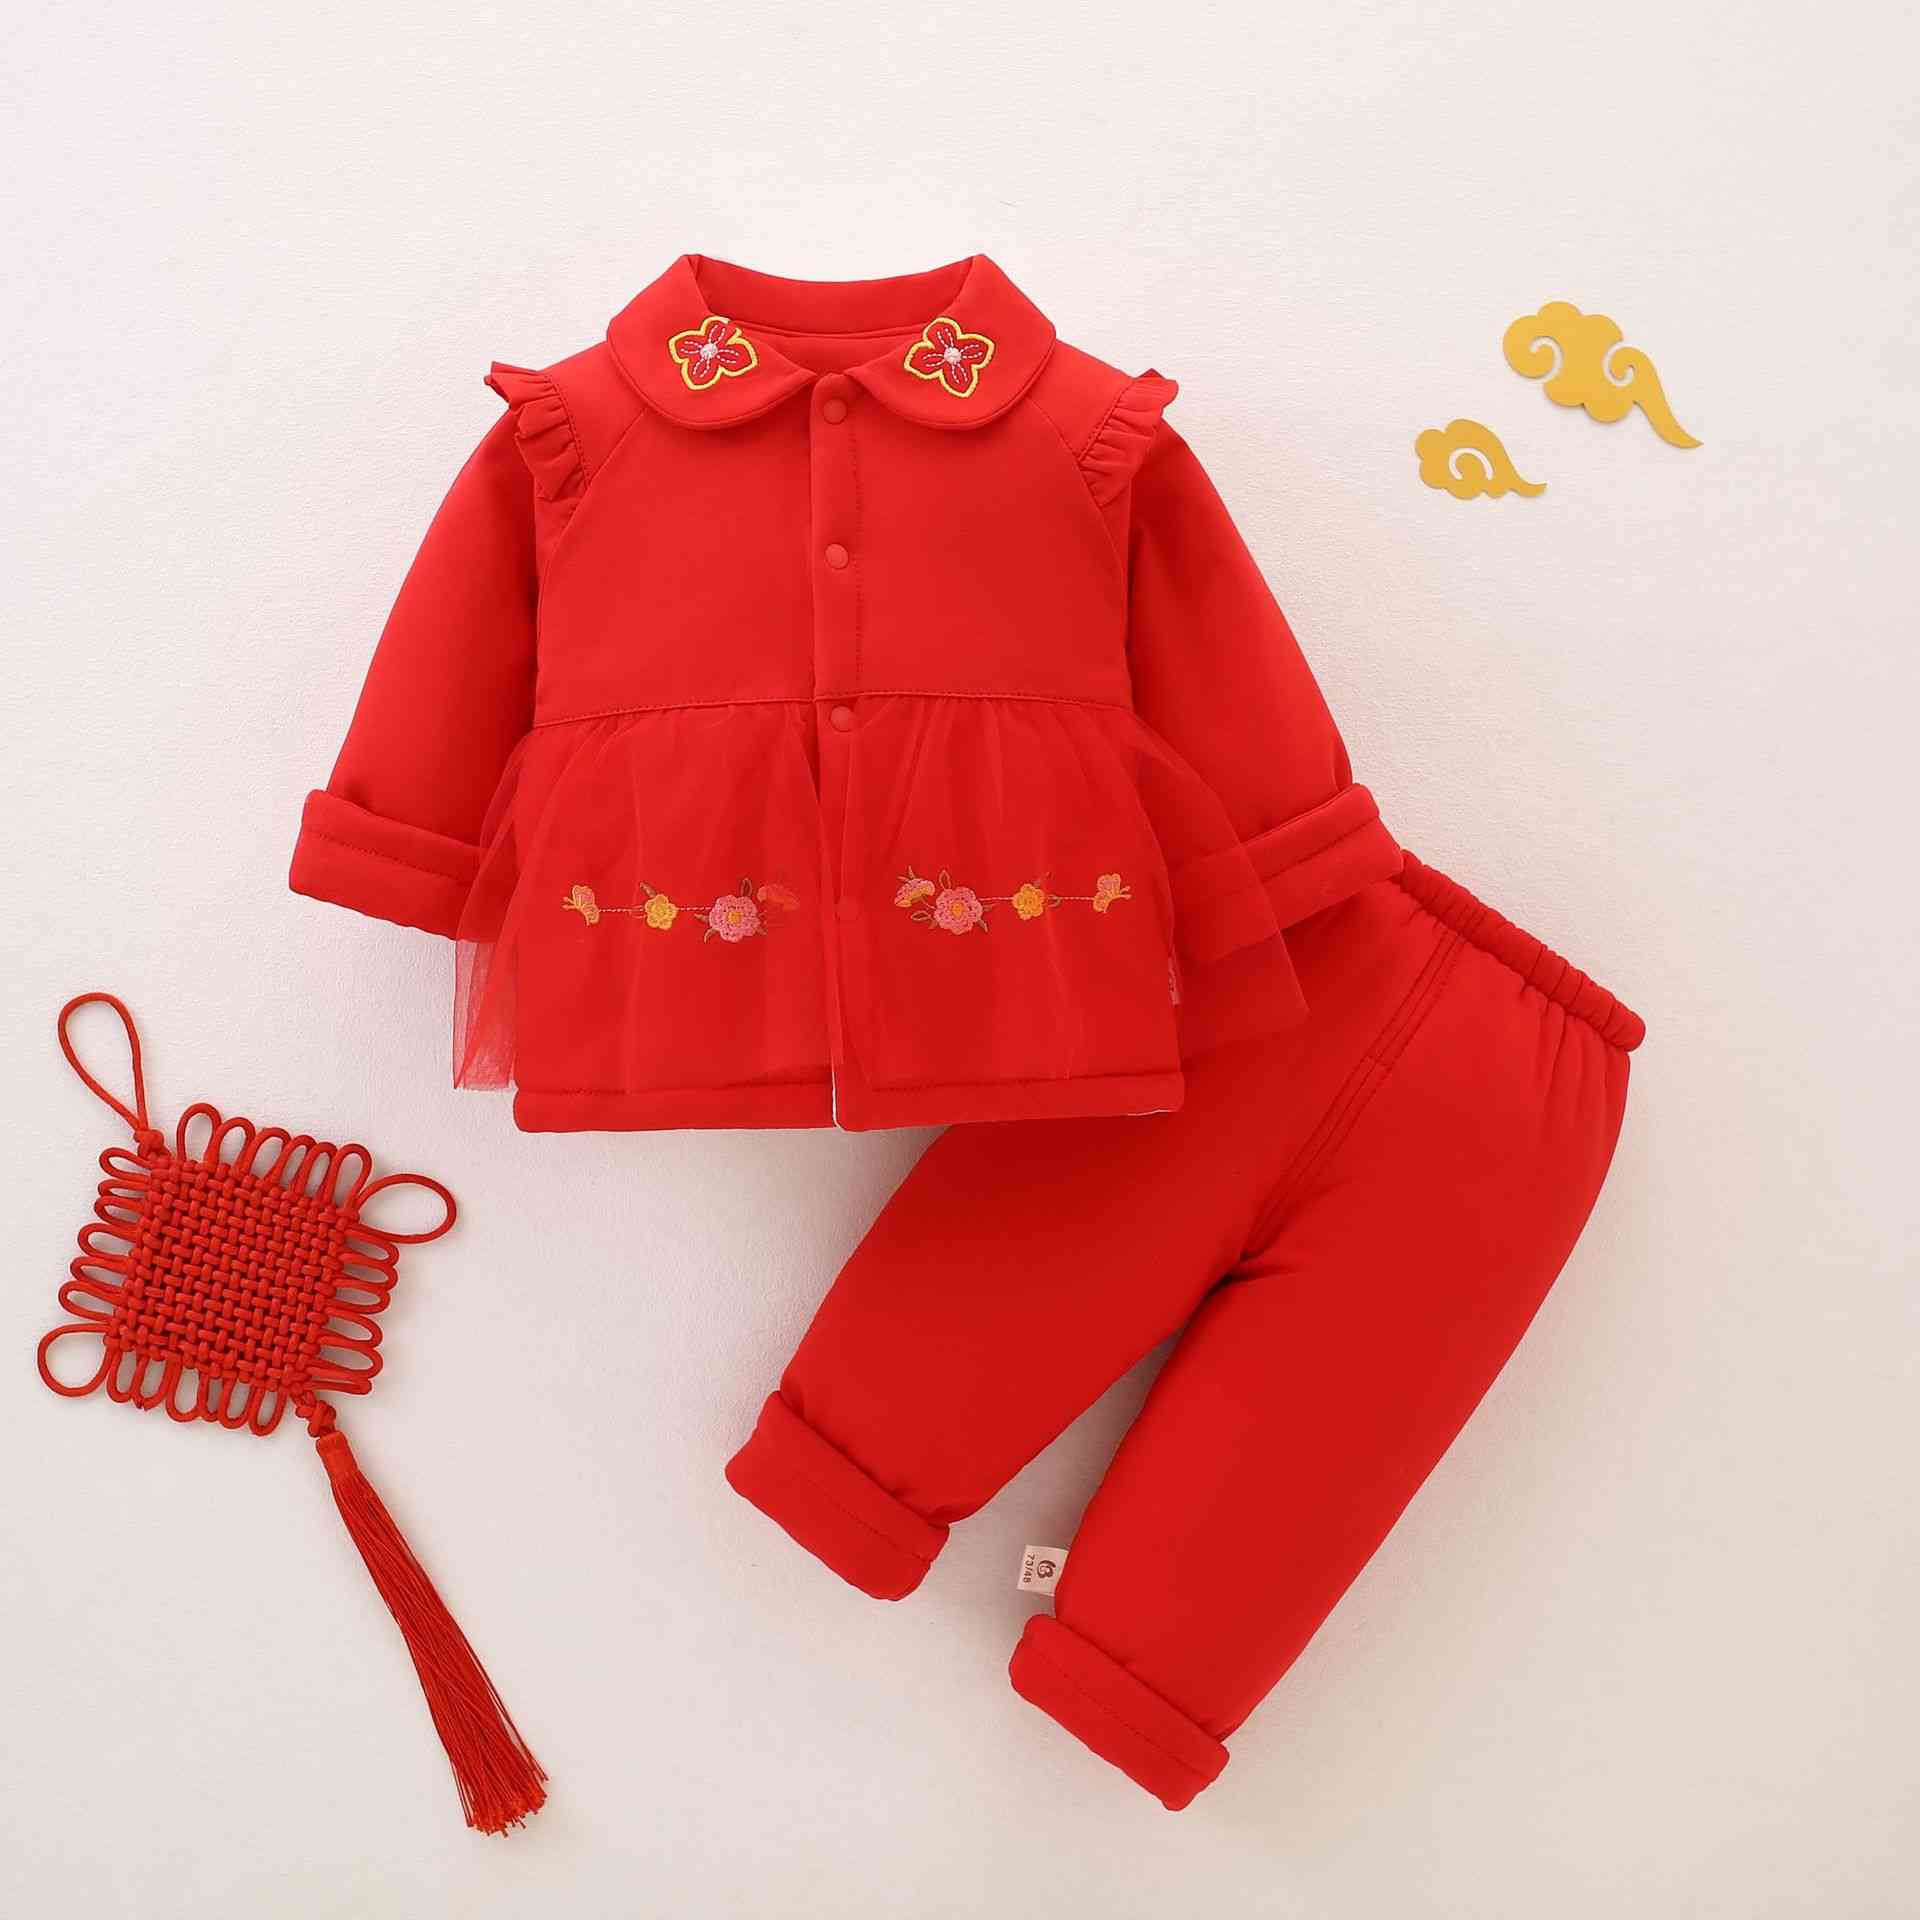 婴儿拜年服180g夹棉分体衣大红色女宝宝周岁衣服过年衣服分体棉衣